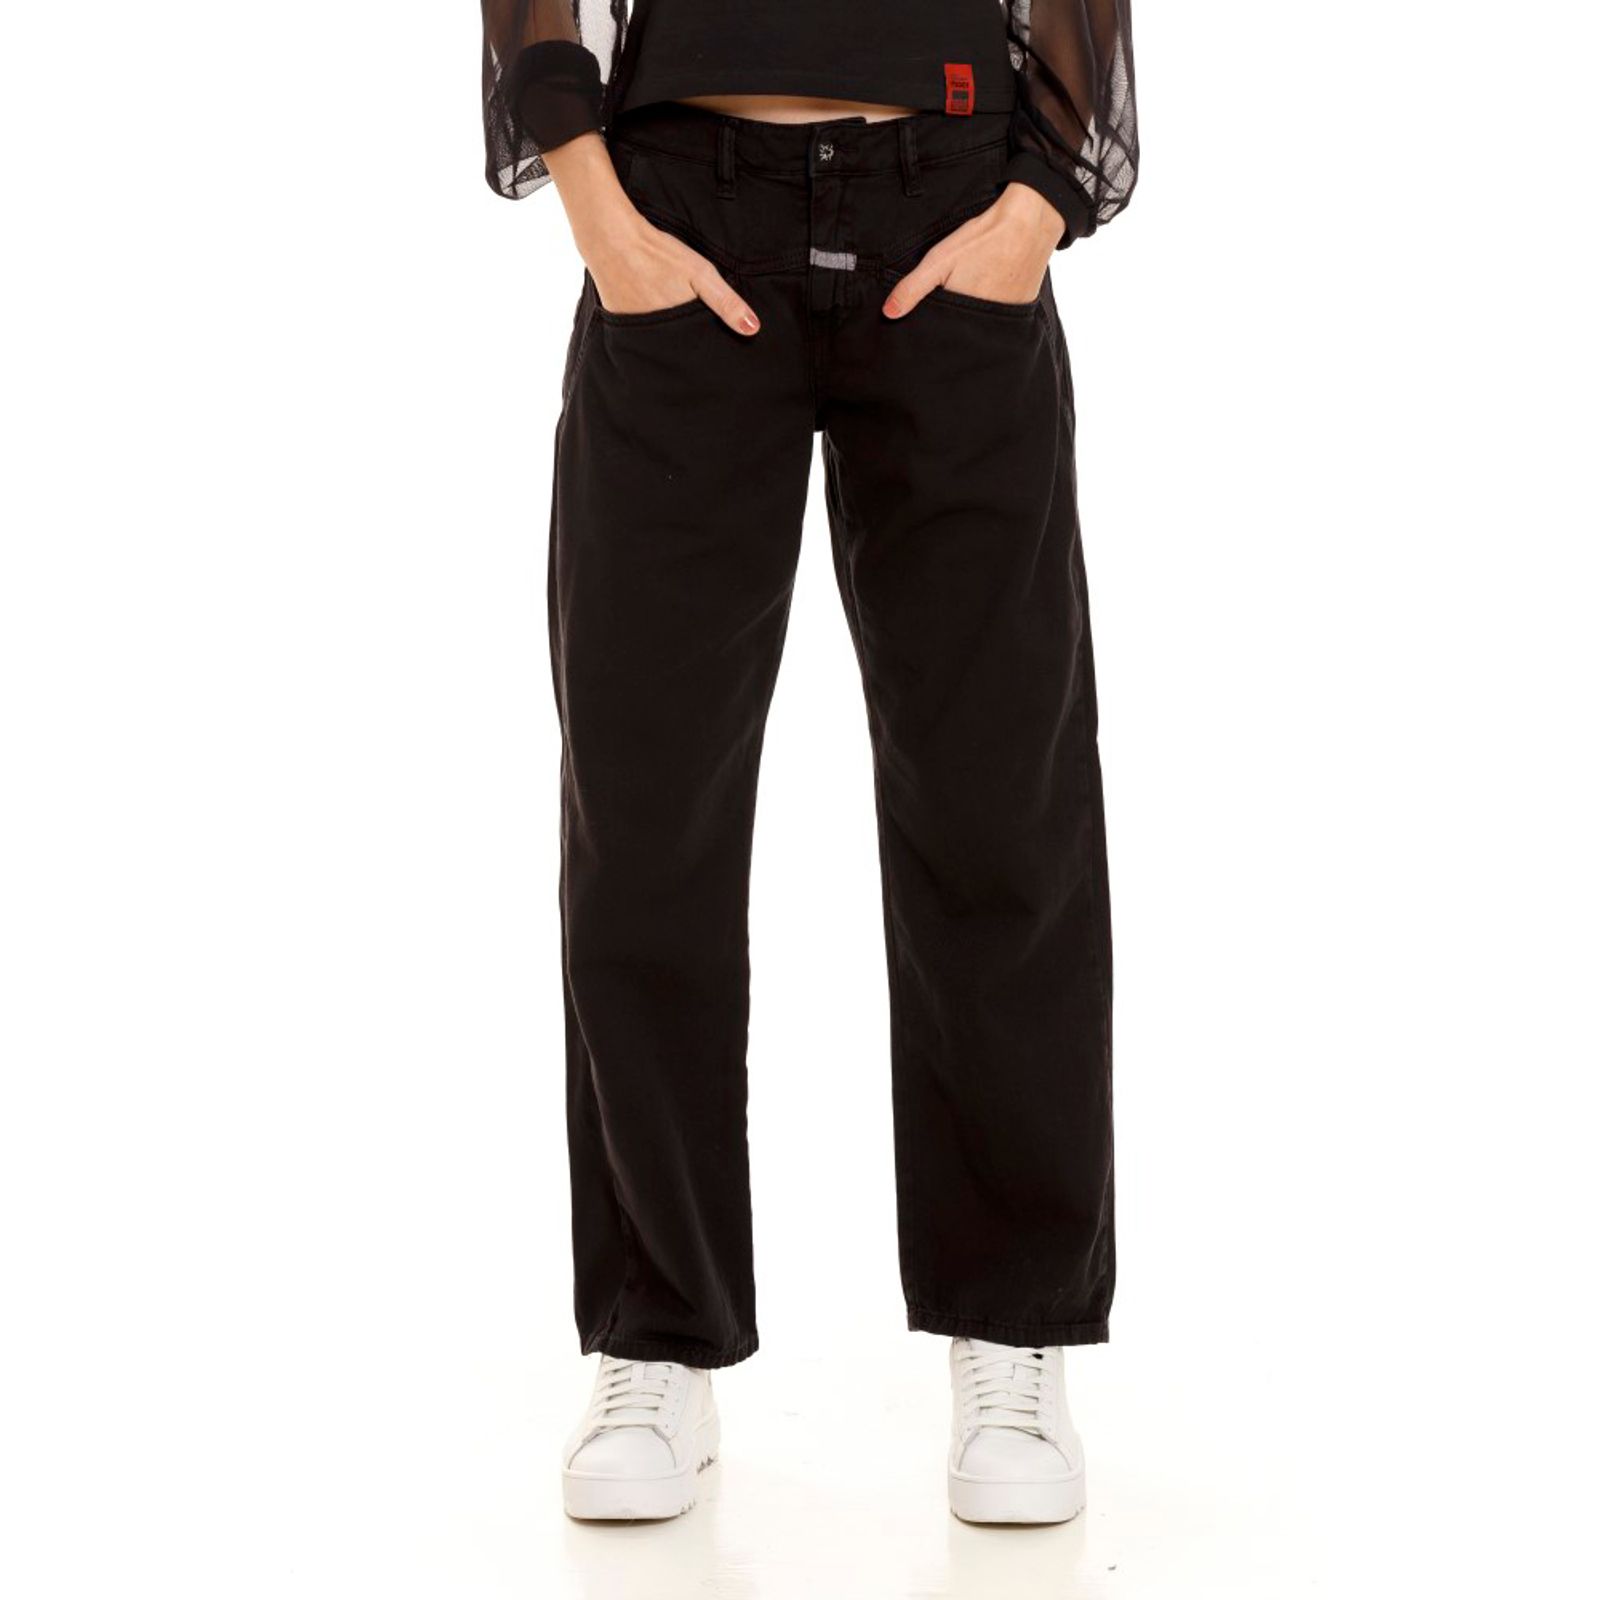 Pantalón chino cinturón - Mujer, Pantalones